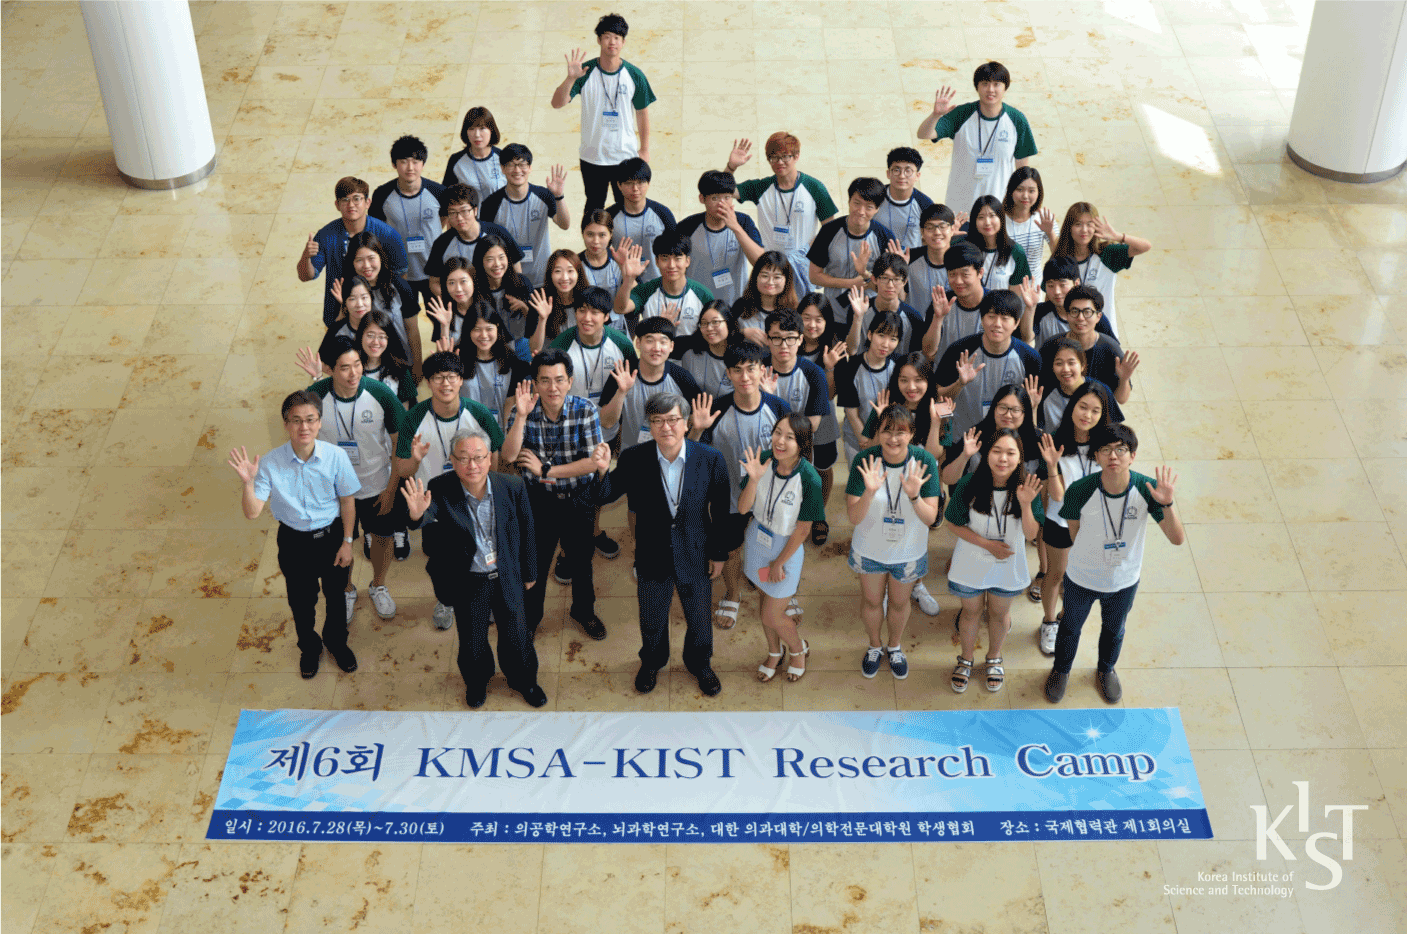 제6회 KIST-KMSA Research Camp 단체사진